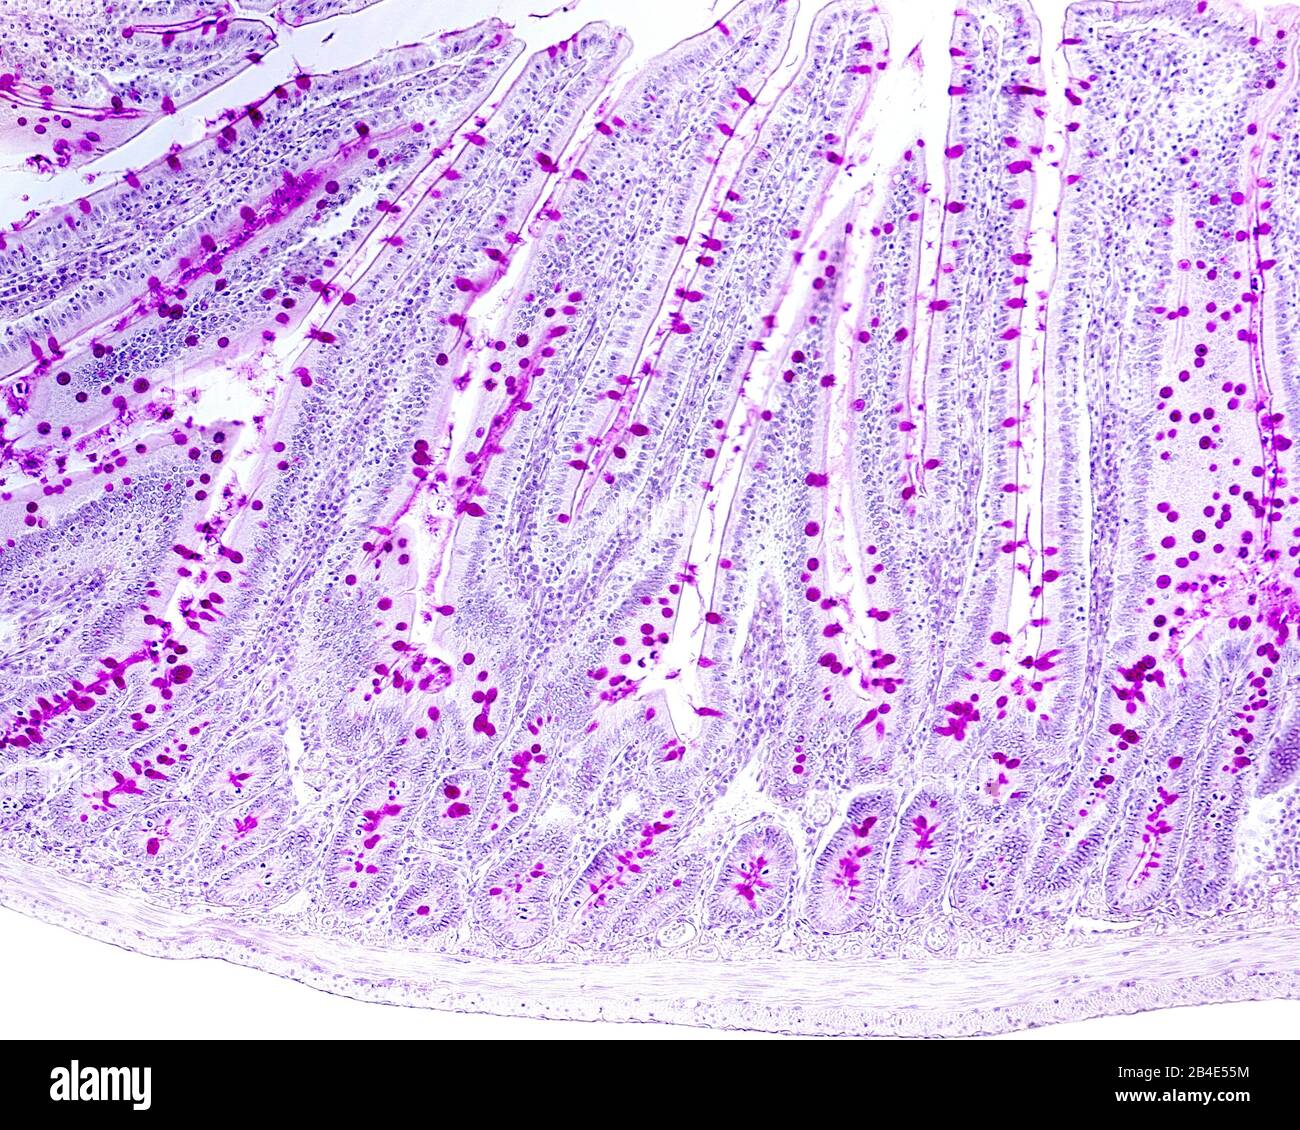 Micrographe lumineux des cellules de goblet coloré avec la technique pas. Ils sont situés dans l'épithélium qui tapisse les villosités de l'intestin grêle. La stria Banque D'Images